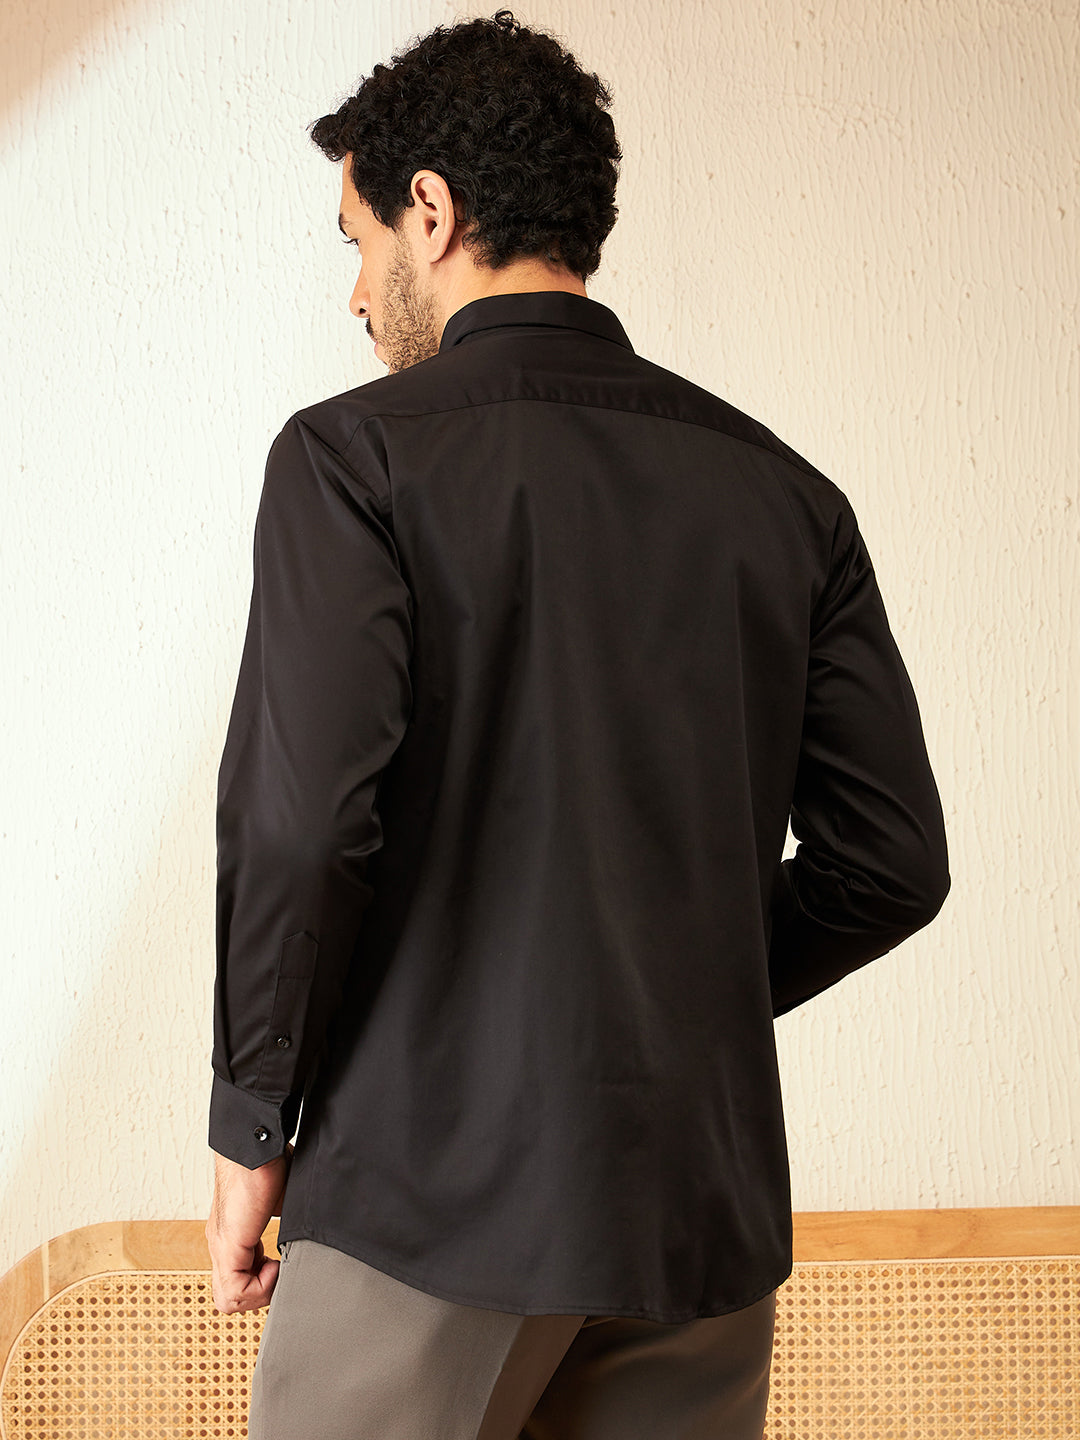 DENNISON Men Black Spread Collar Smart Opaque Party Shirt